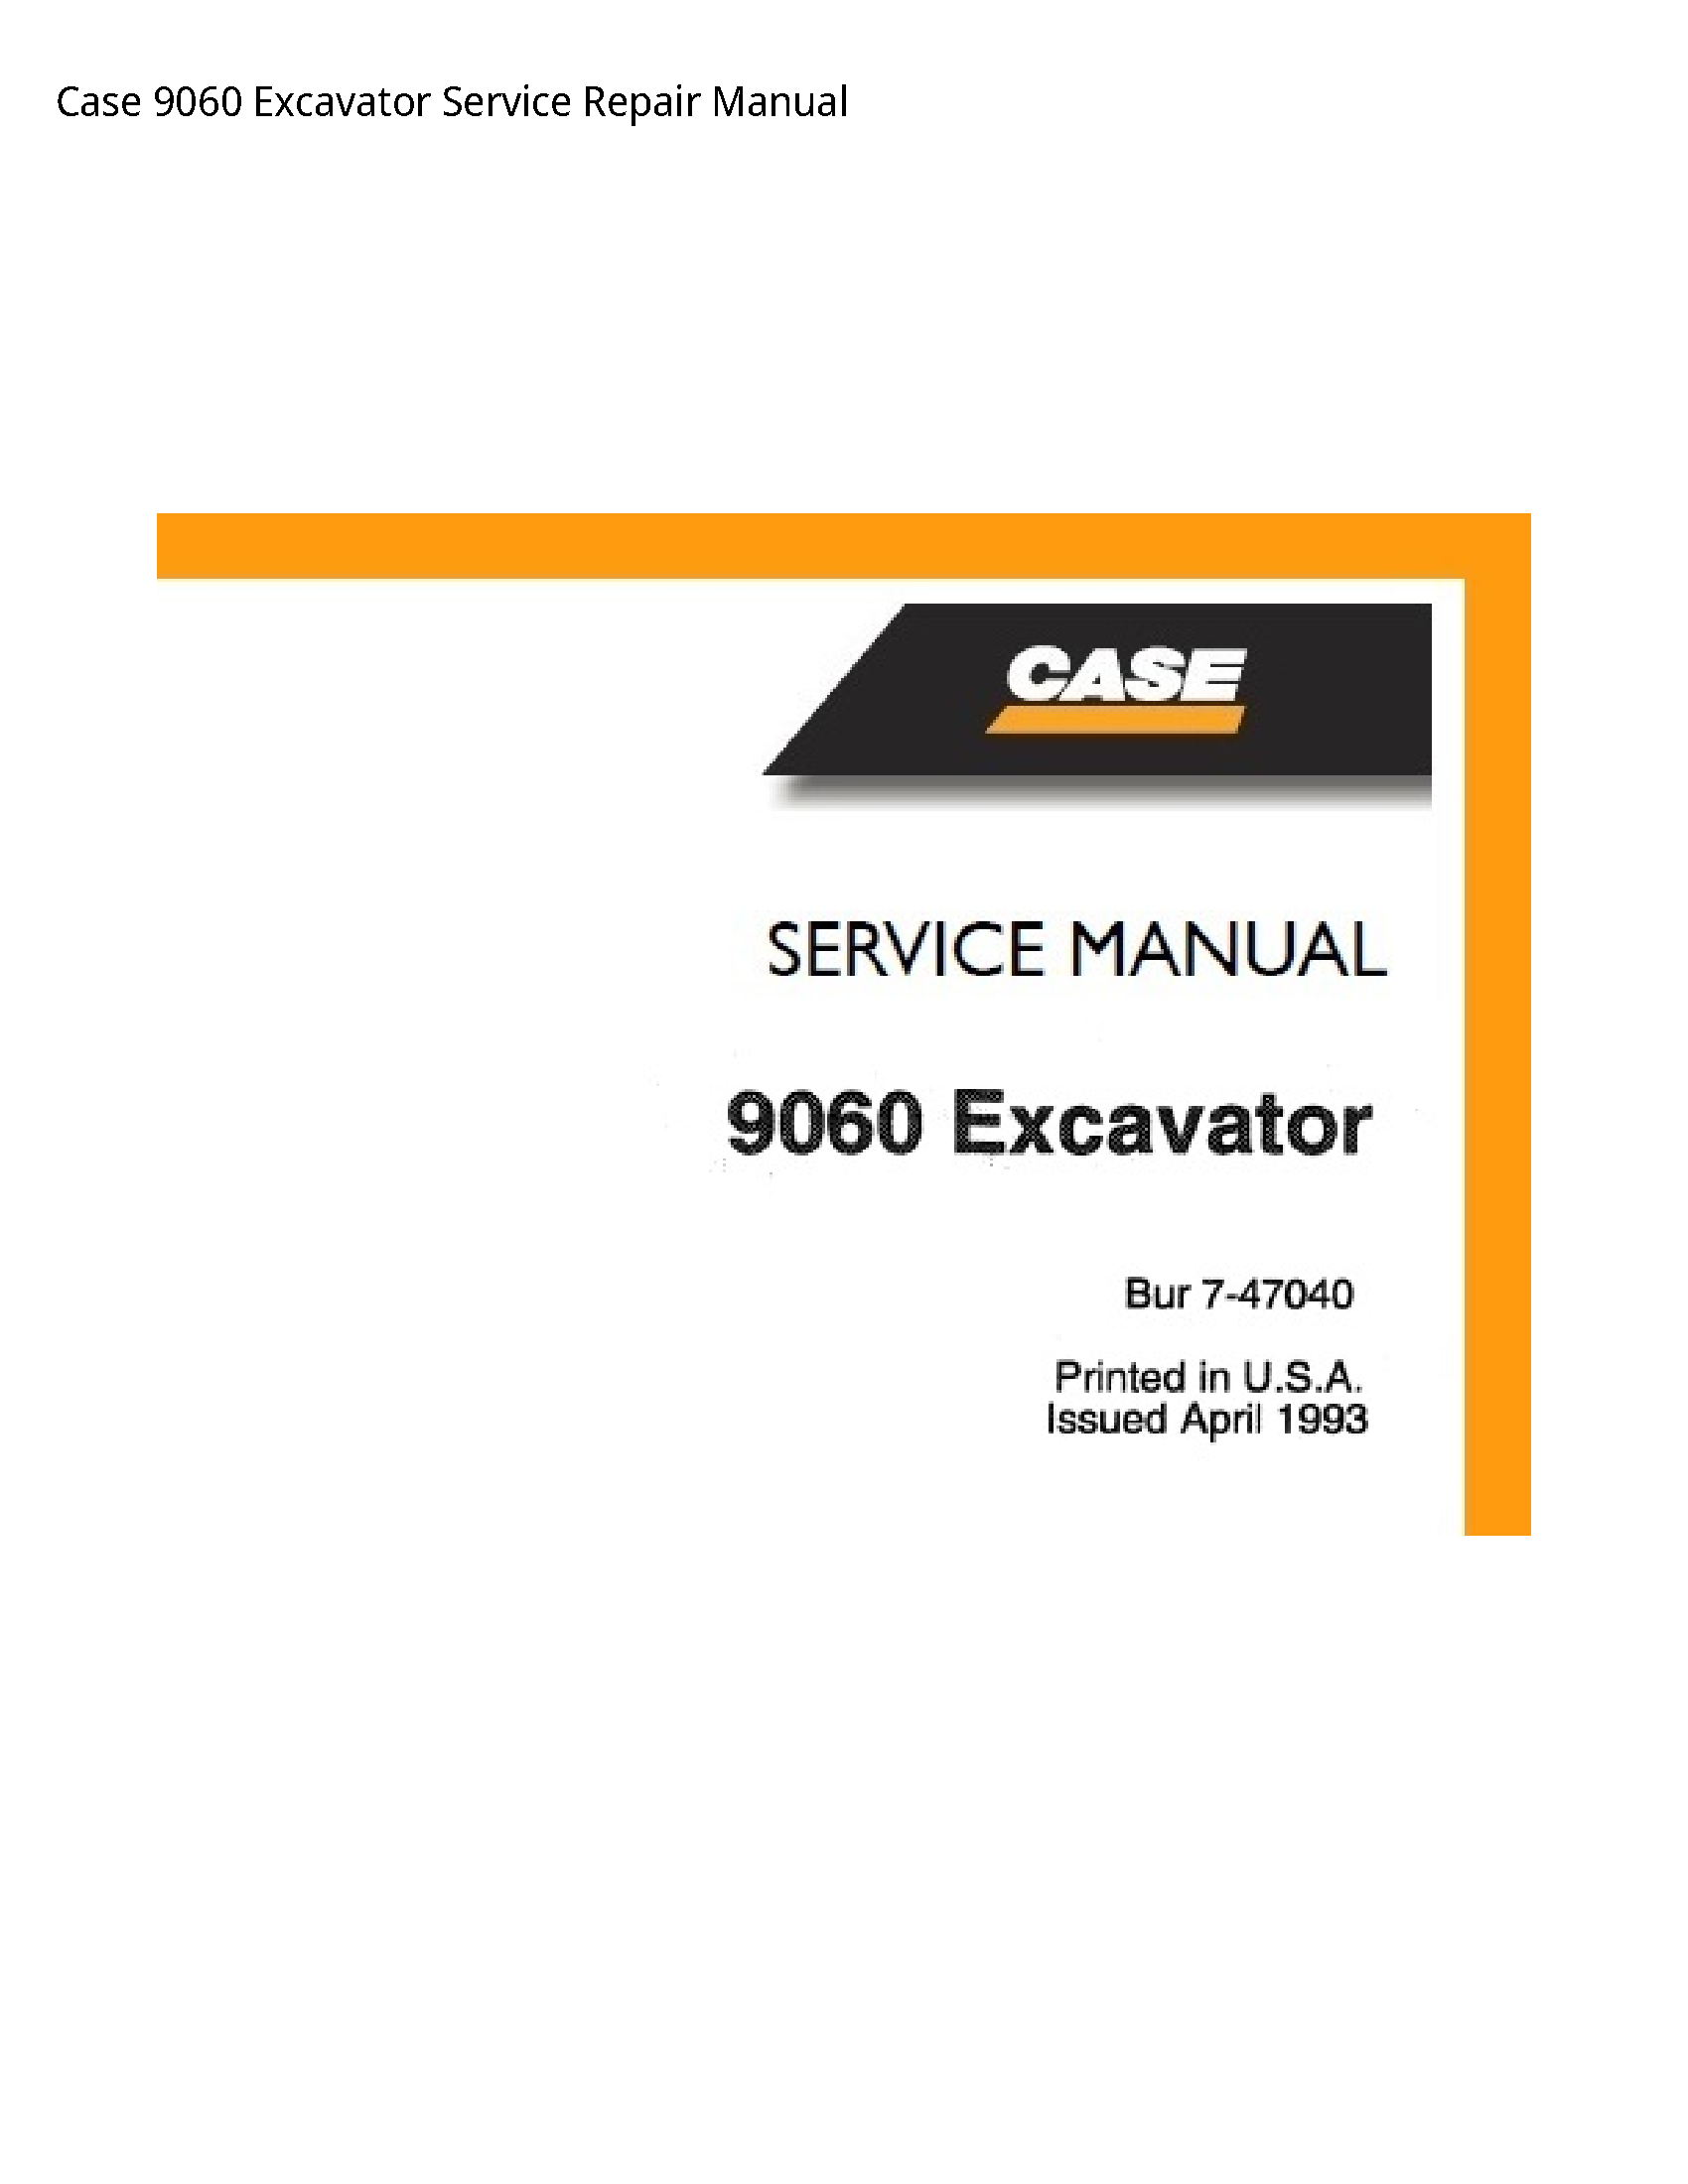 Case/Case IH 9060 Excavator manual